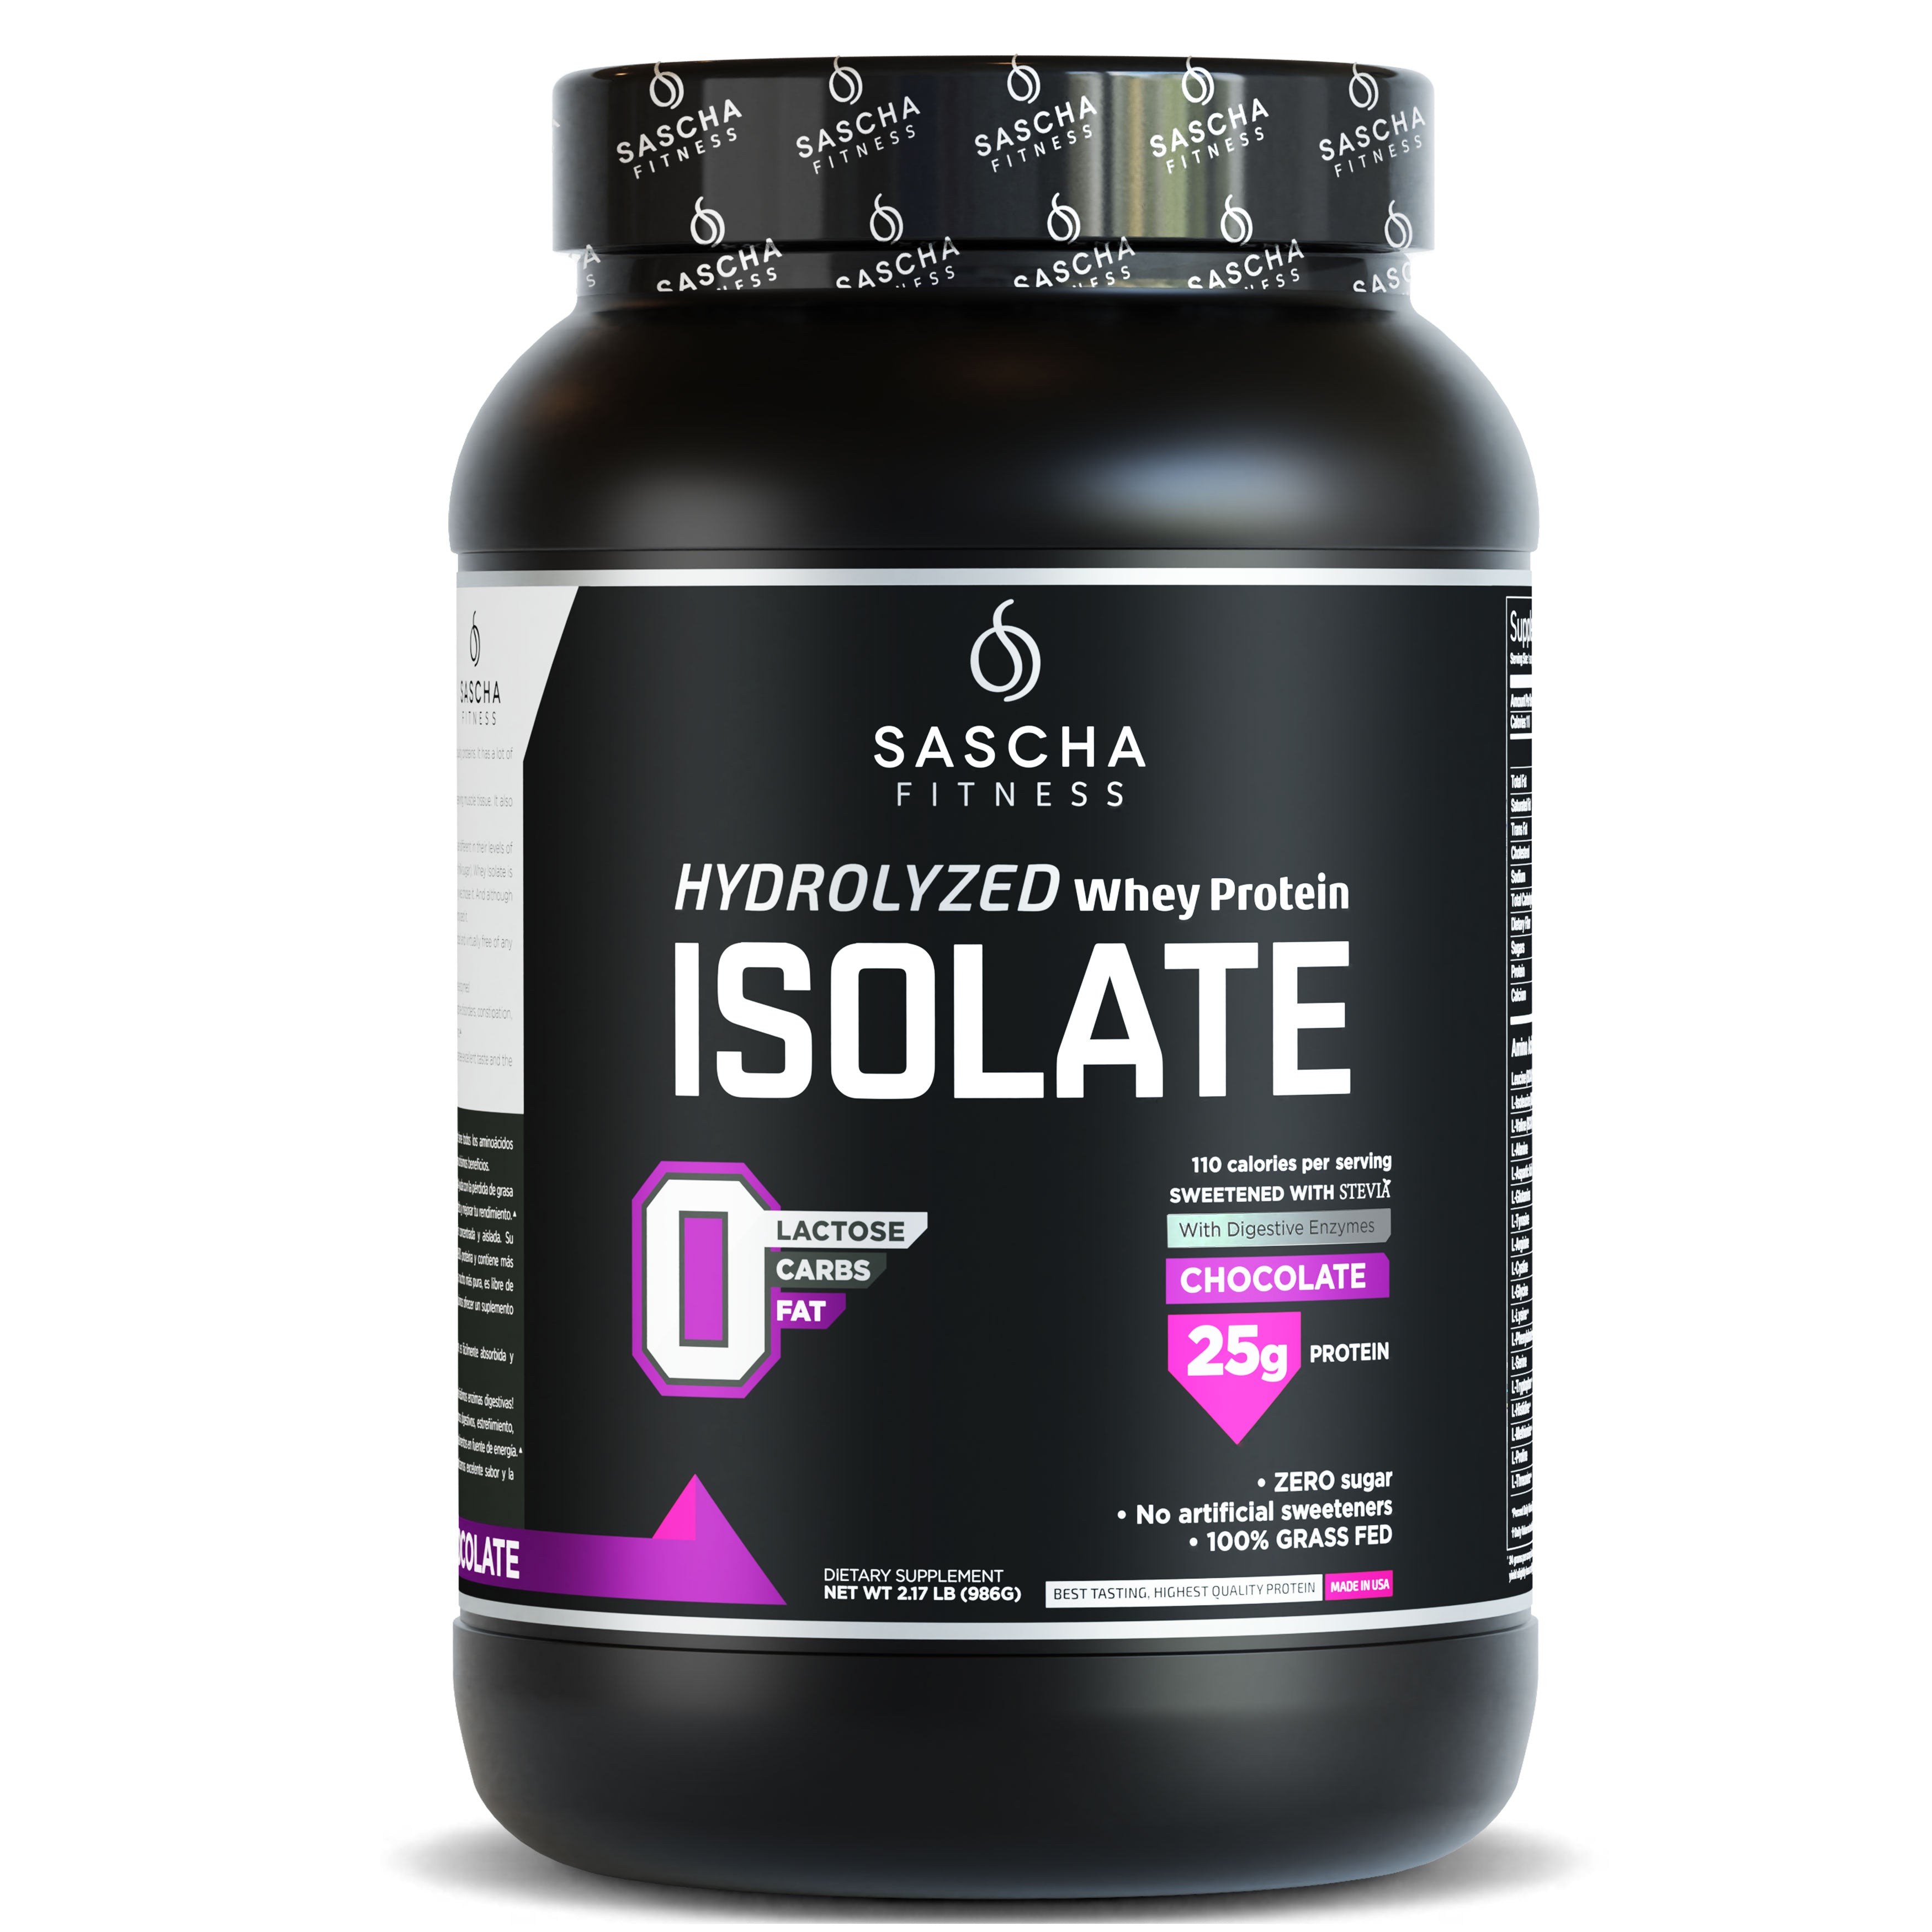 Sascha Fitness México - Hydrolyzed Whey Protein Isolate Chocolate | Ganar Músculo